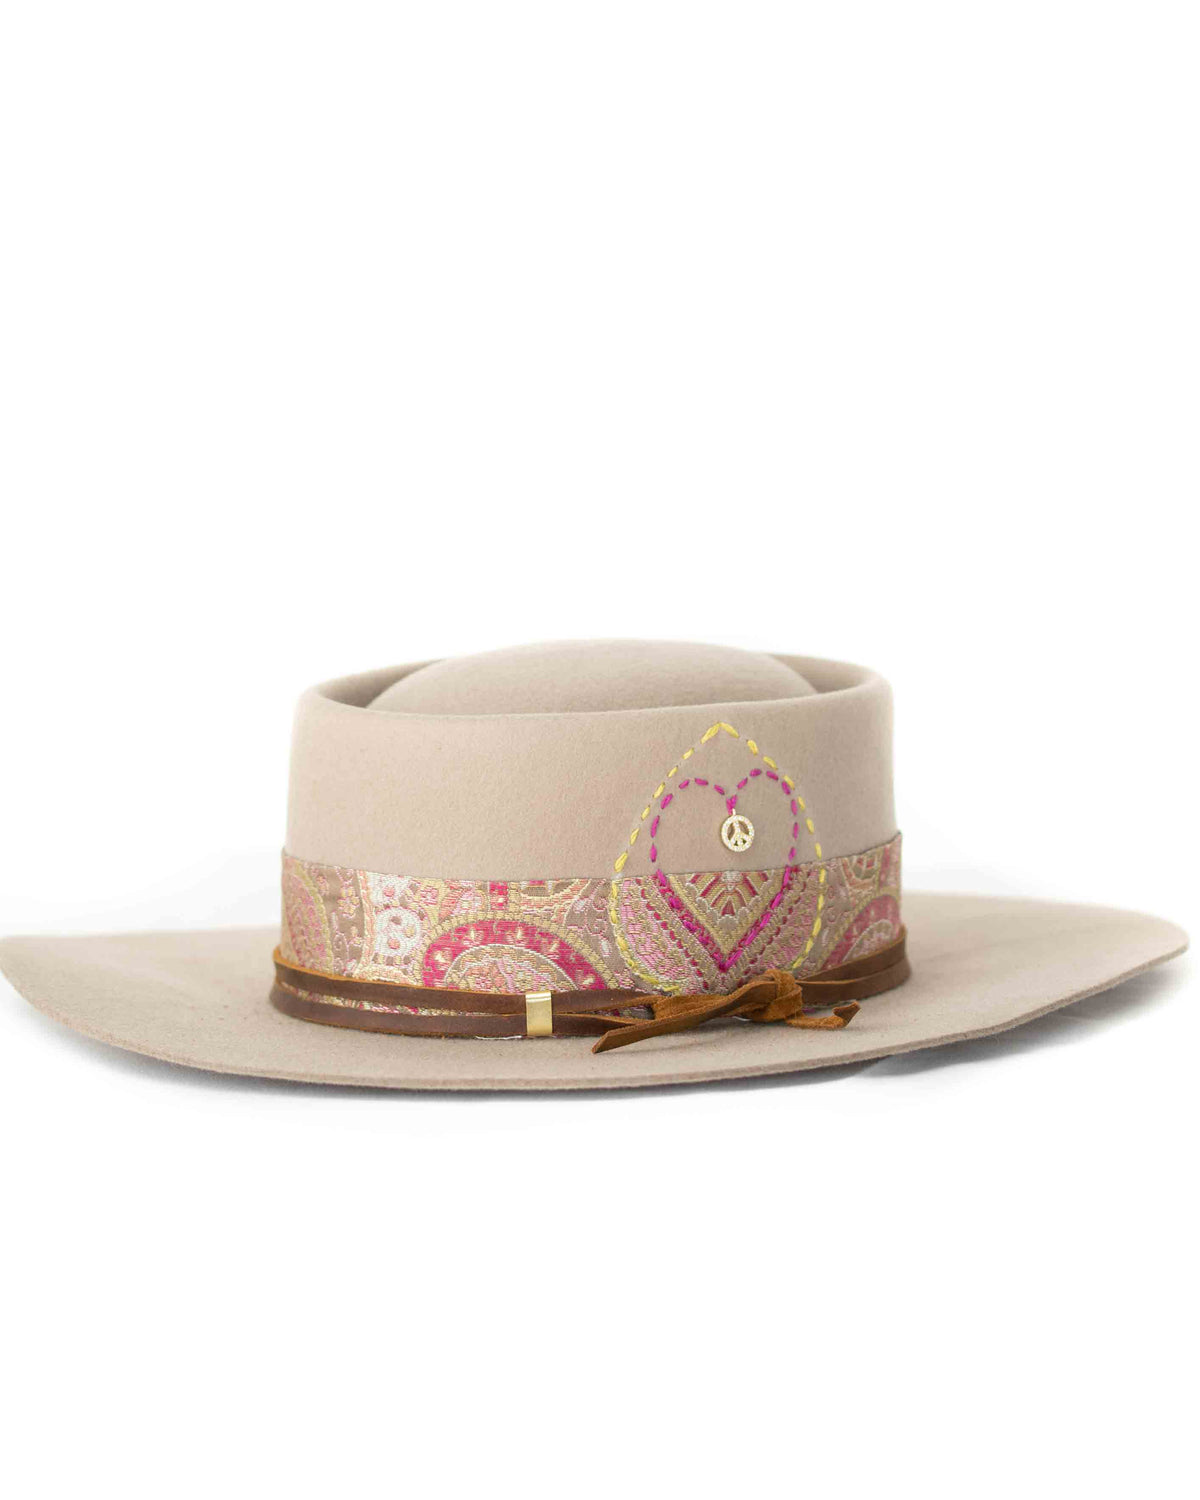 Heart Hat * Australian Wool *